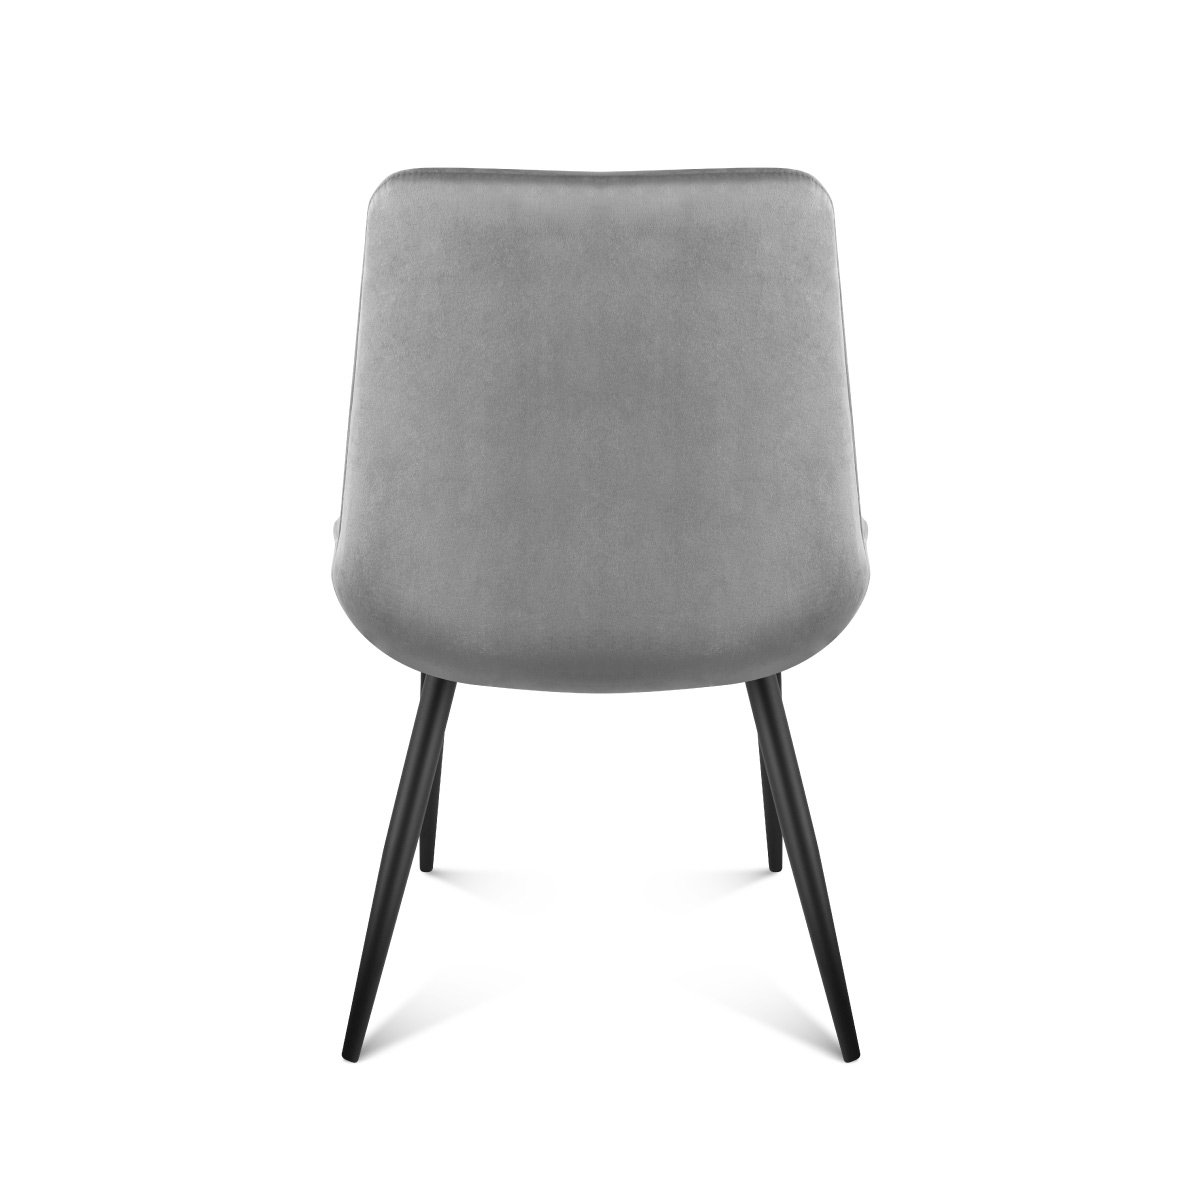 Tył krzesła Mark Adler Prince 3.0 Grey